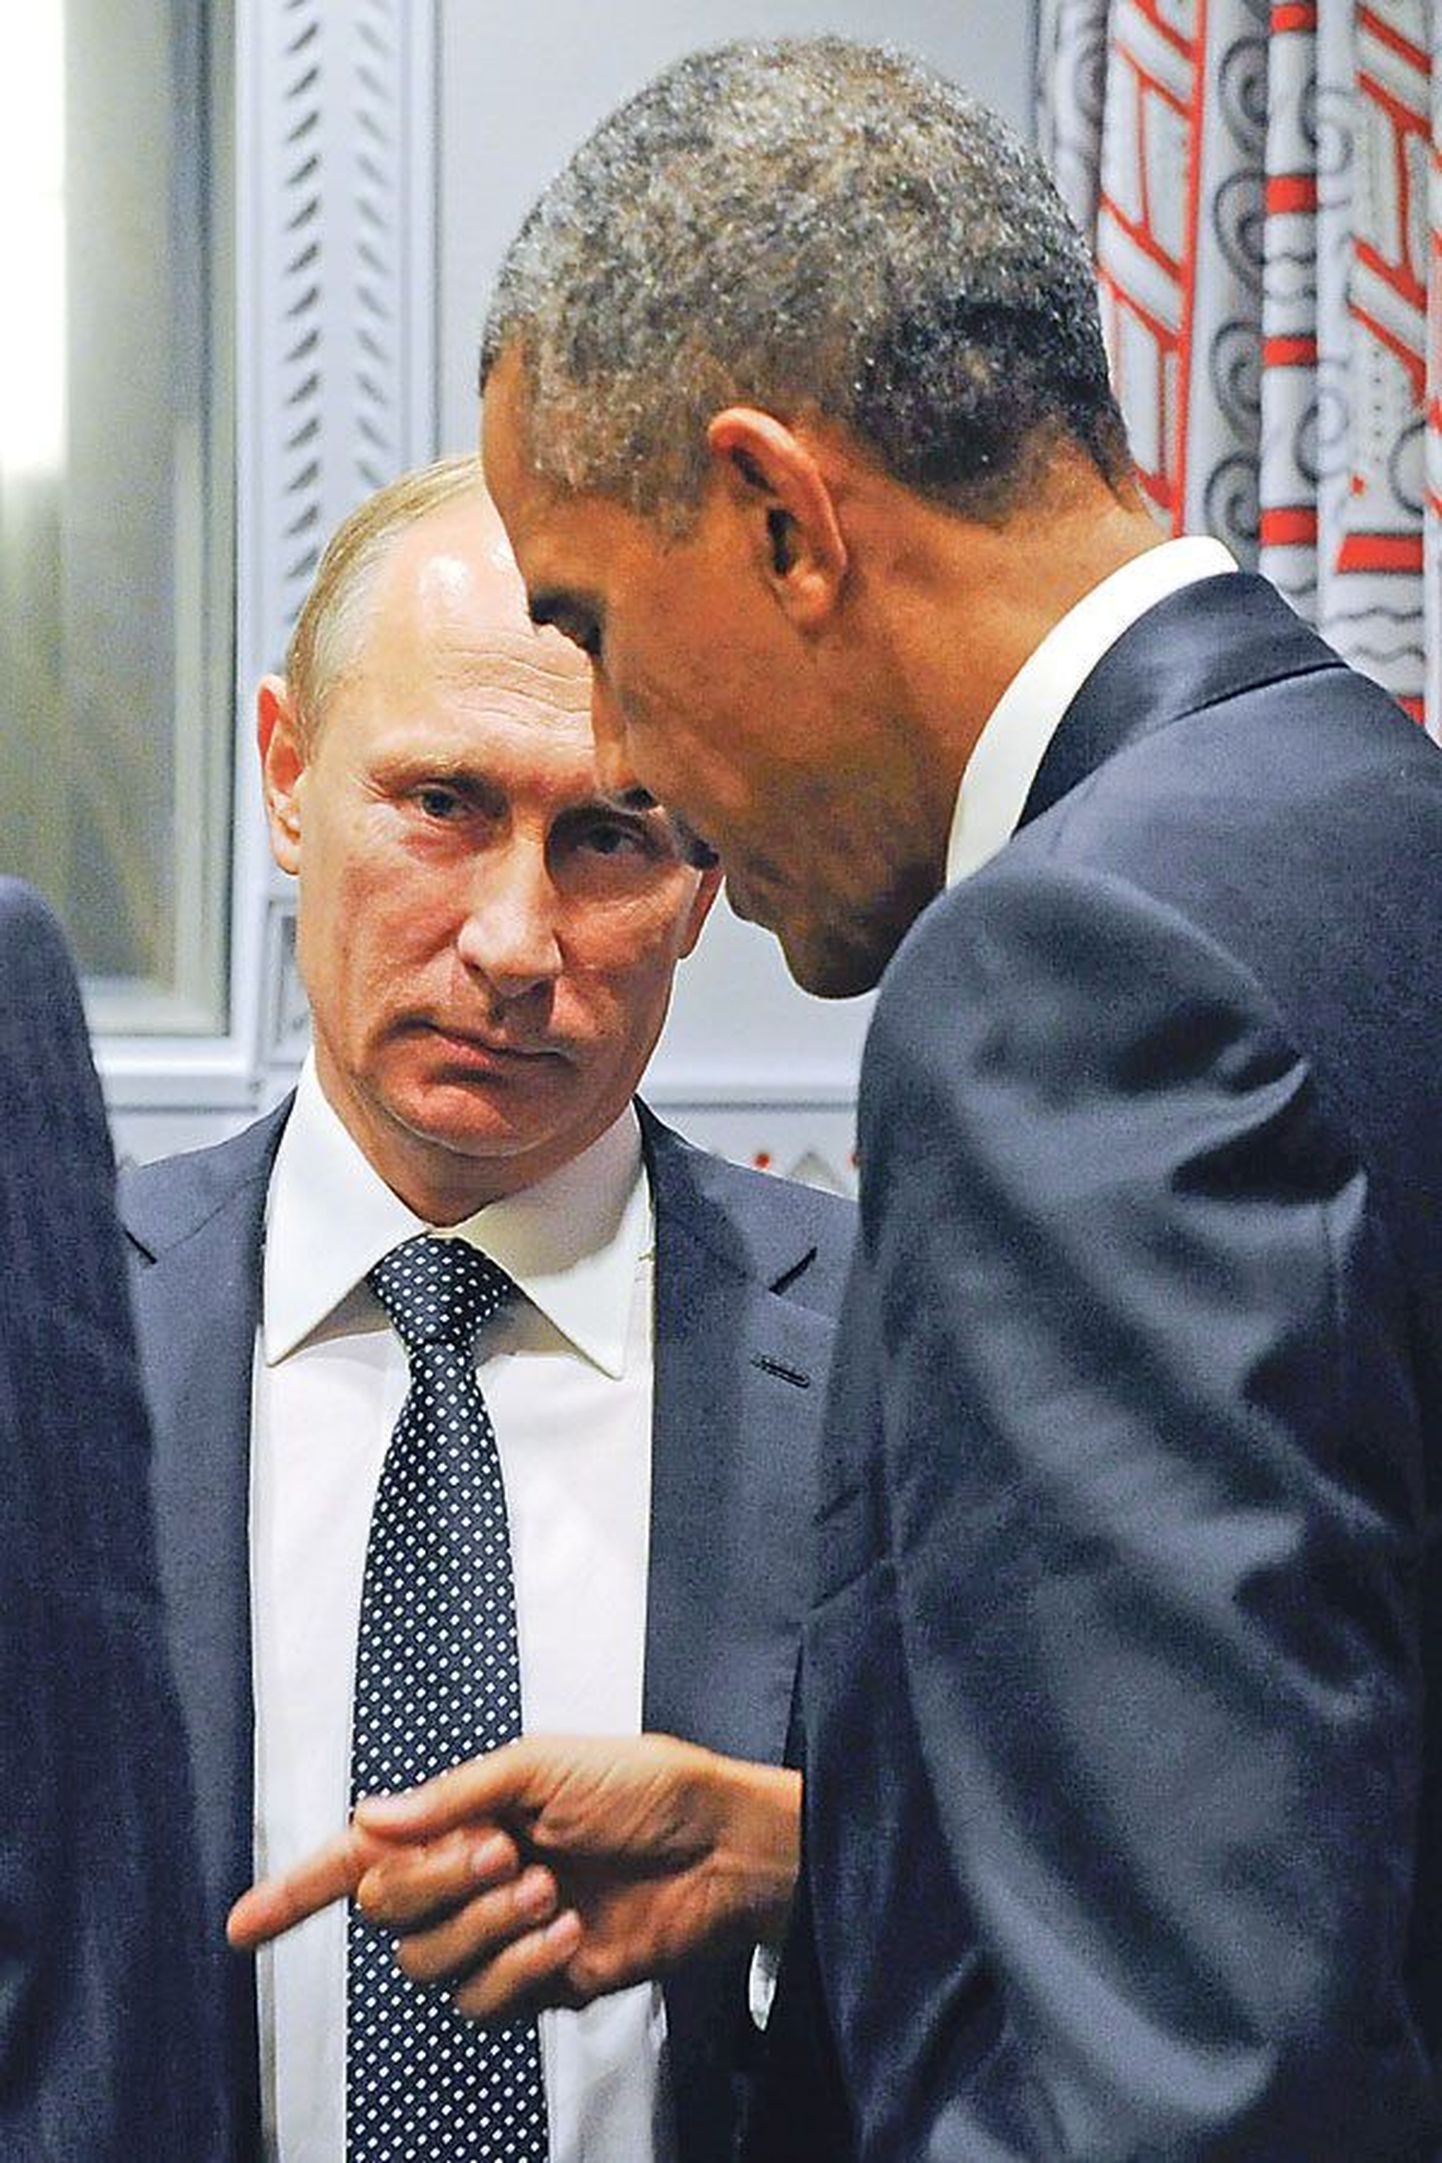 Владимир Путин посетил США впервые за восемь лет. Последний раз российский лидер проводил полноценные переговоры с Бараком Обамой в июне 2013 года.